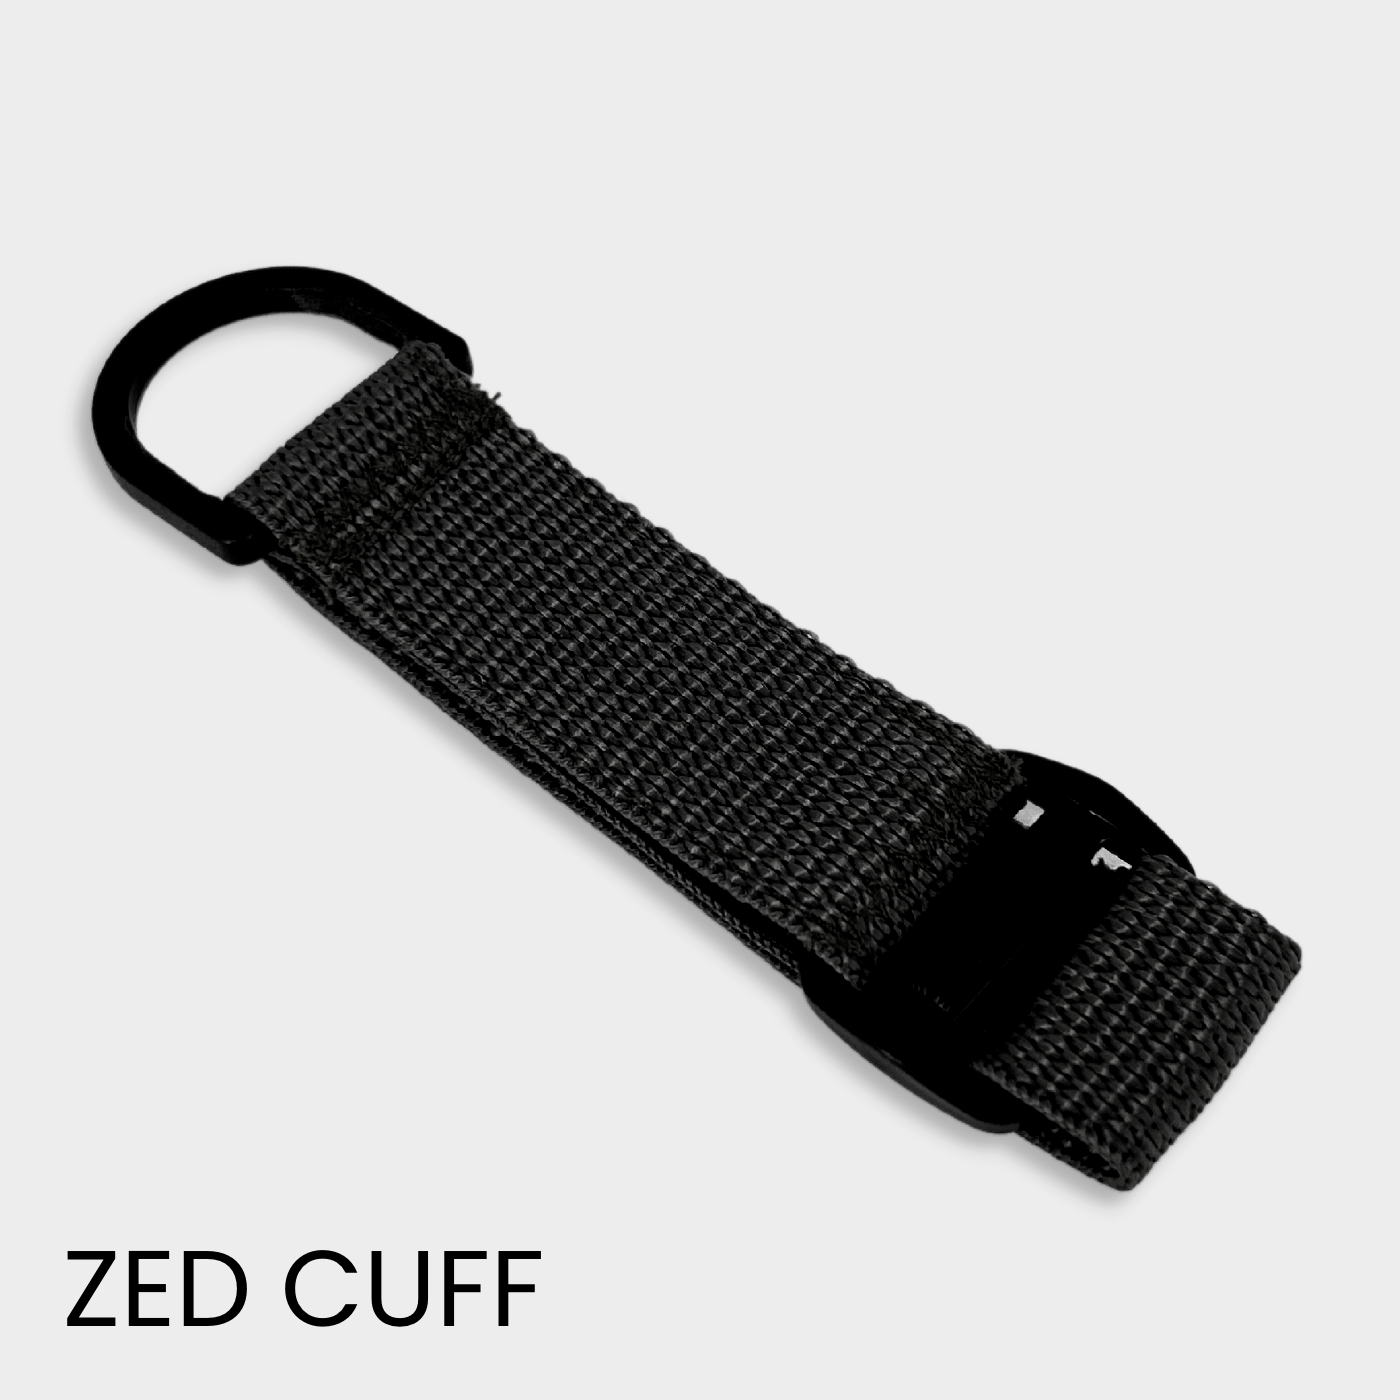 Black Zed Cuff Grip Assist